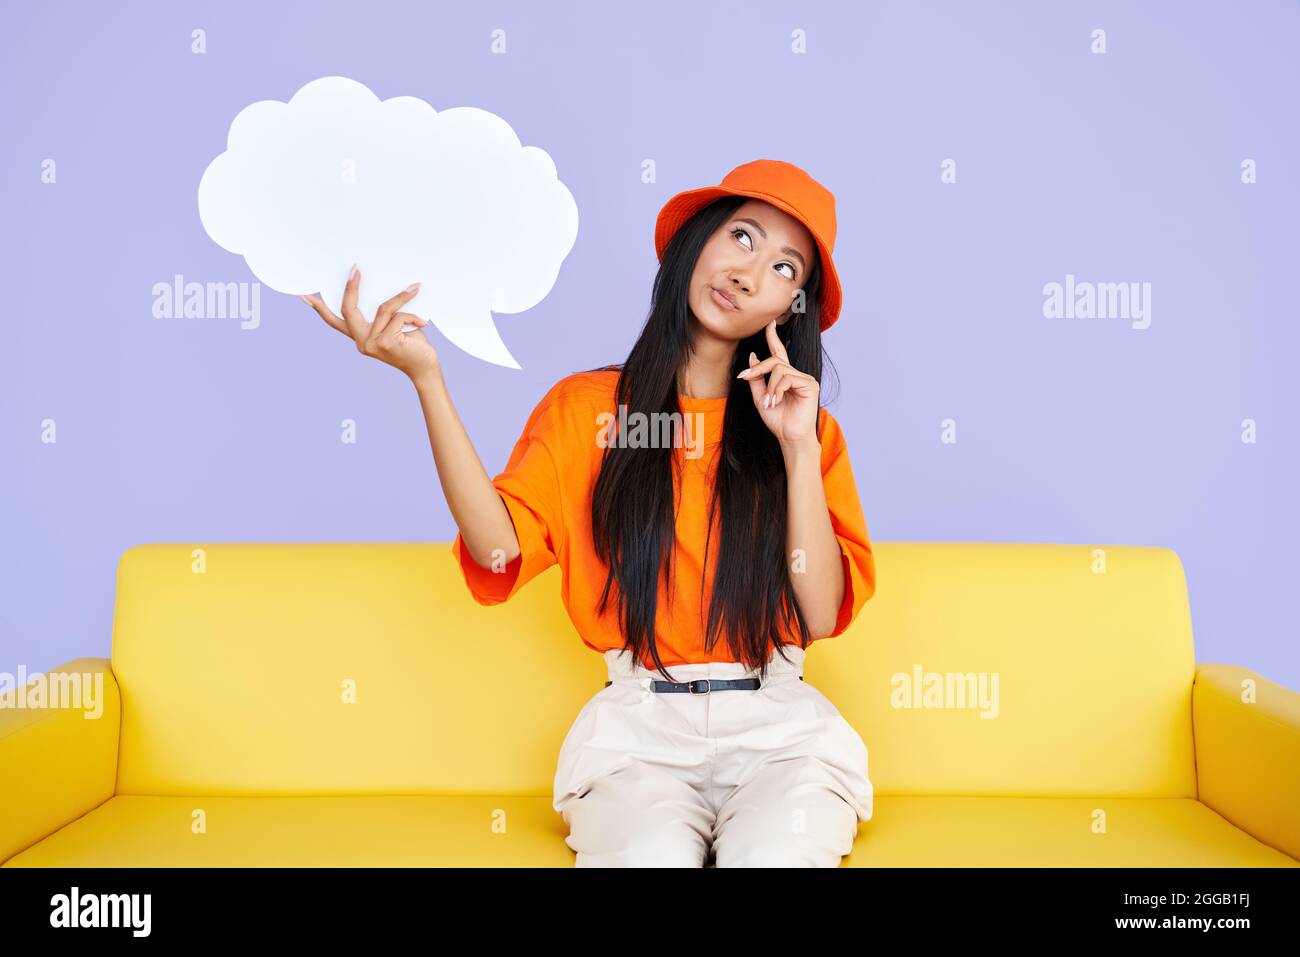 Femme hipster pensive tenant une bulle vide de parole regardant vers le haut assis sur un canapé jaune. Banque D'Images